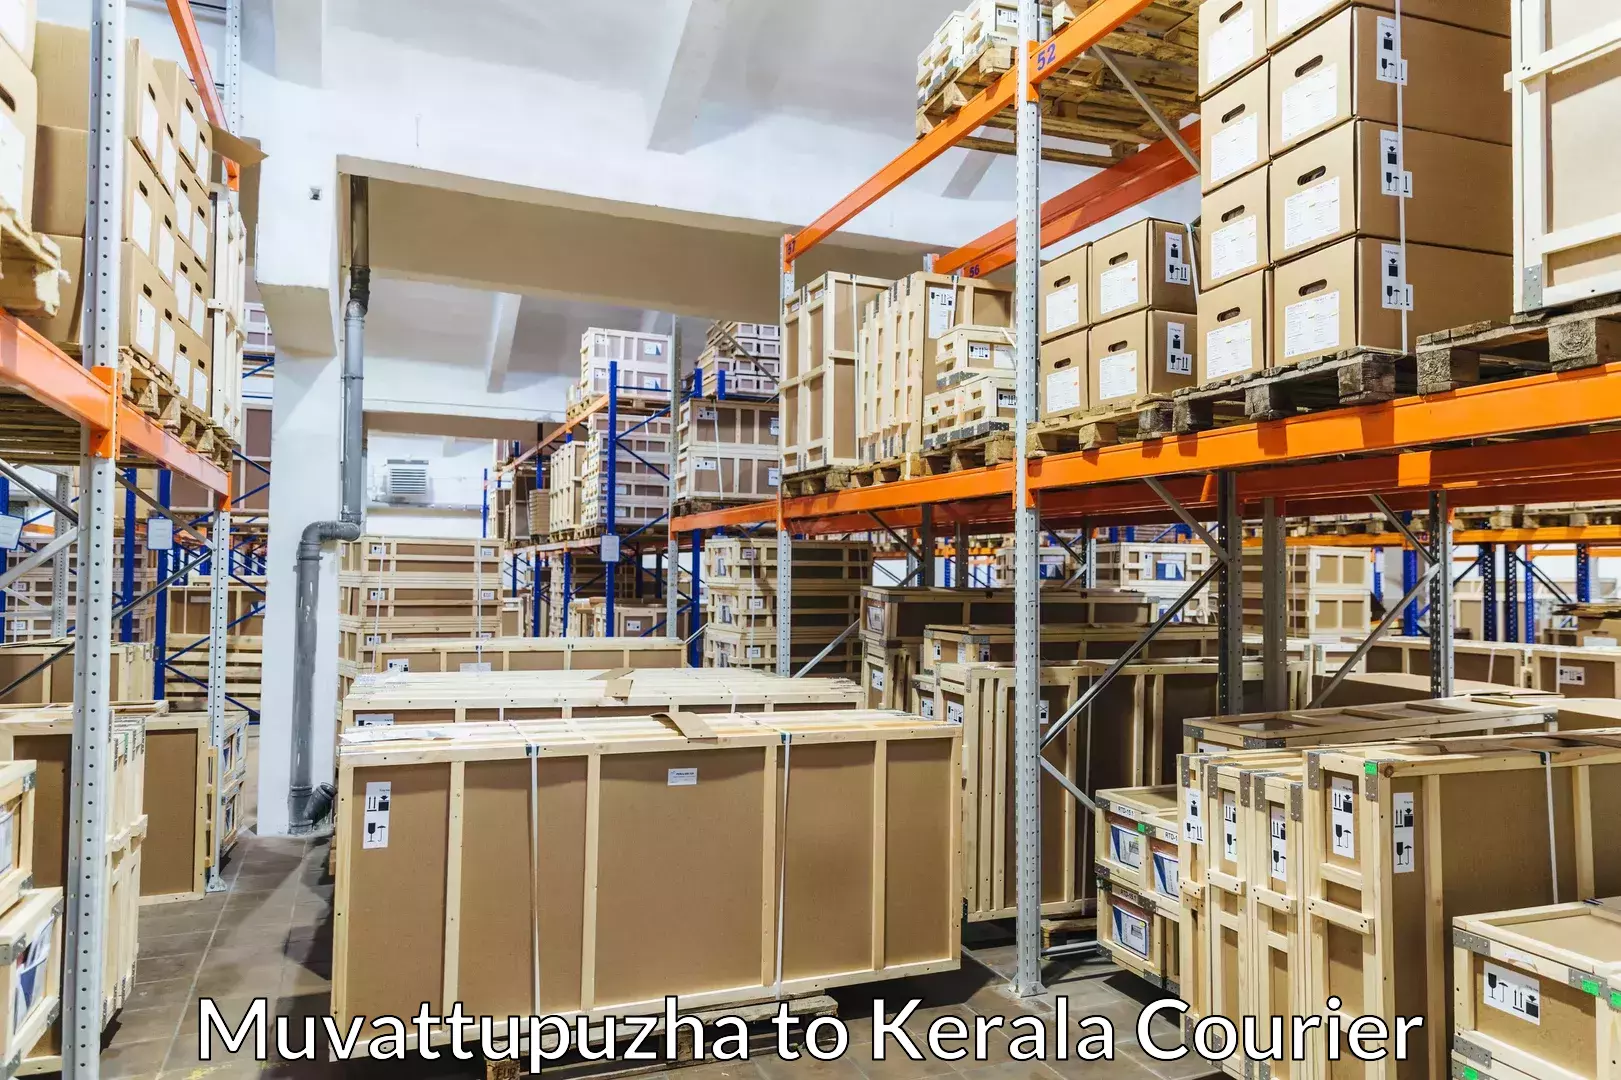 Luggage transport company Muvattupuzha to Kerala